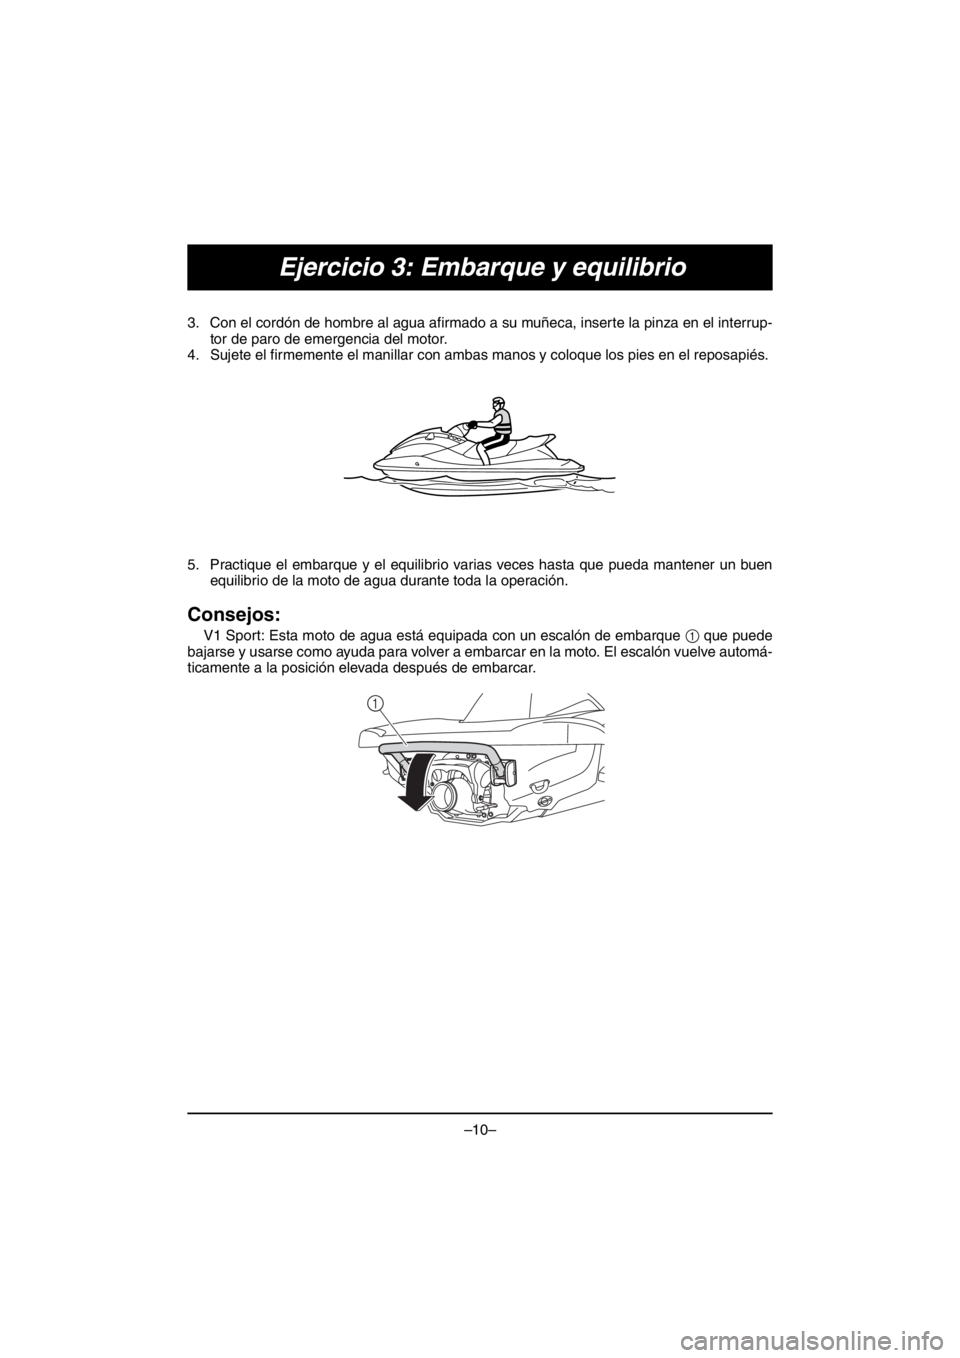 YAMAHA V1 2016  Manuale duso (in Italian) –10–
Ejercicio 3: Embarque y equilibrio
3. Con el cordón de hombre al agua afirmado a su muñeca, inserte la pinza en el interrup-
tor de paro de emergencia del motor.
4. Sujete el firmemente el 